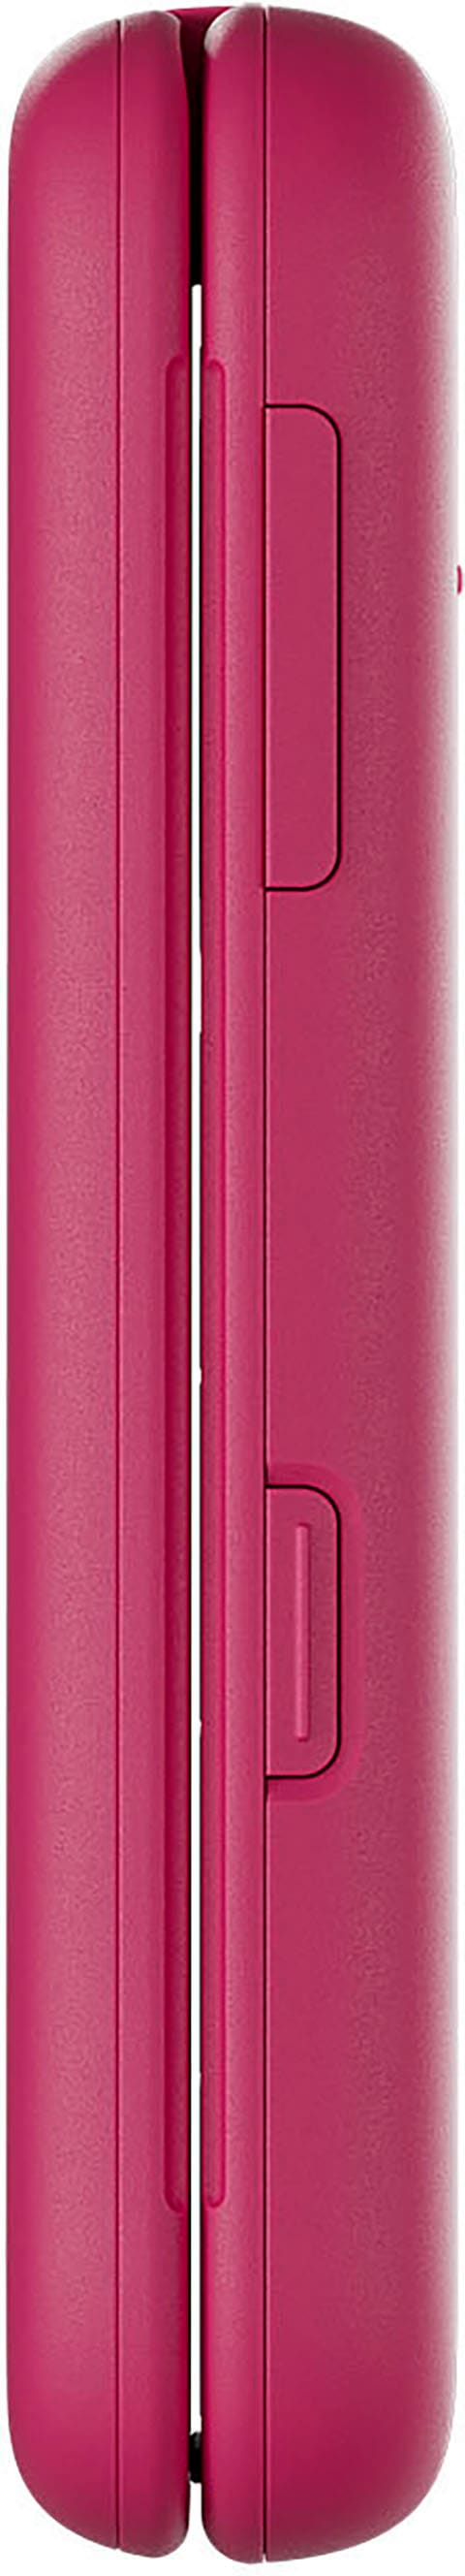 Nokia Klapphandy »2660 Flip«, schwarz, 7,11 cm/2,8 Zoll, 0,13 GB  Speicherplatz, 0,3 MP Kamera jetzt bestellen bei OTTO